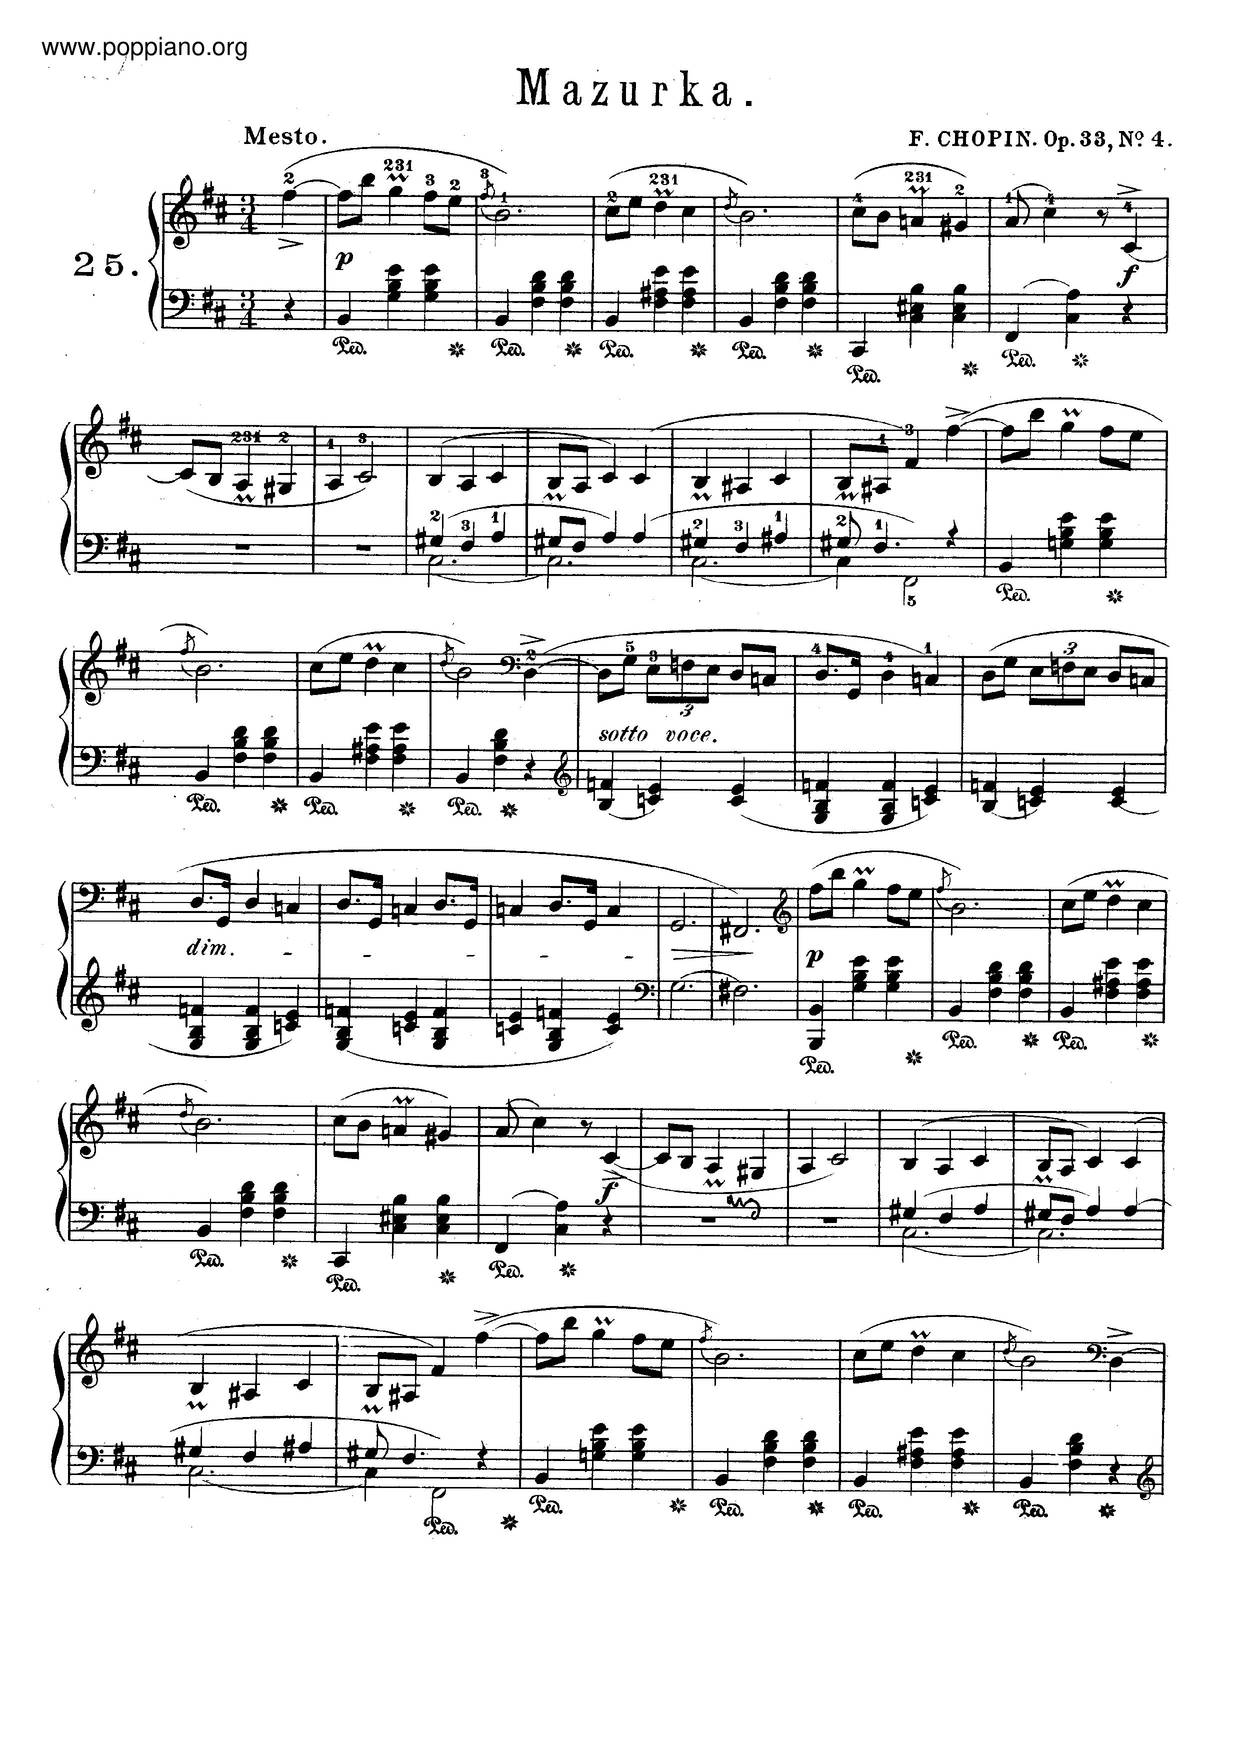 Mazurkas, Op. 33 Score